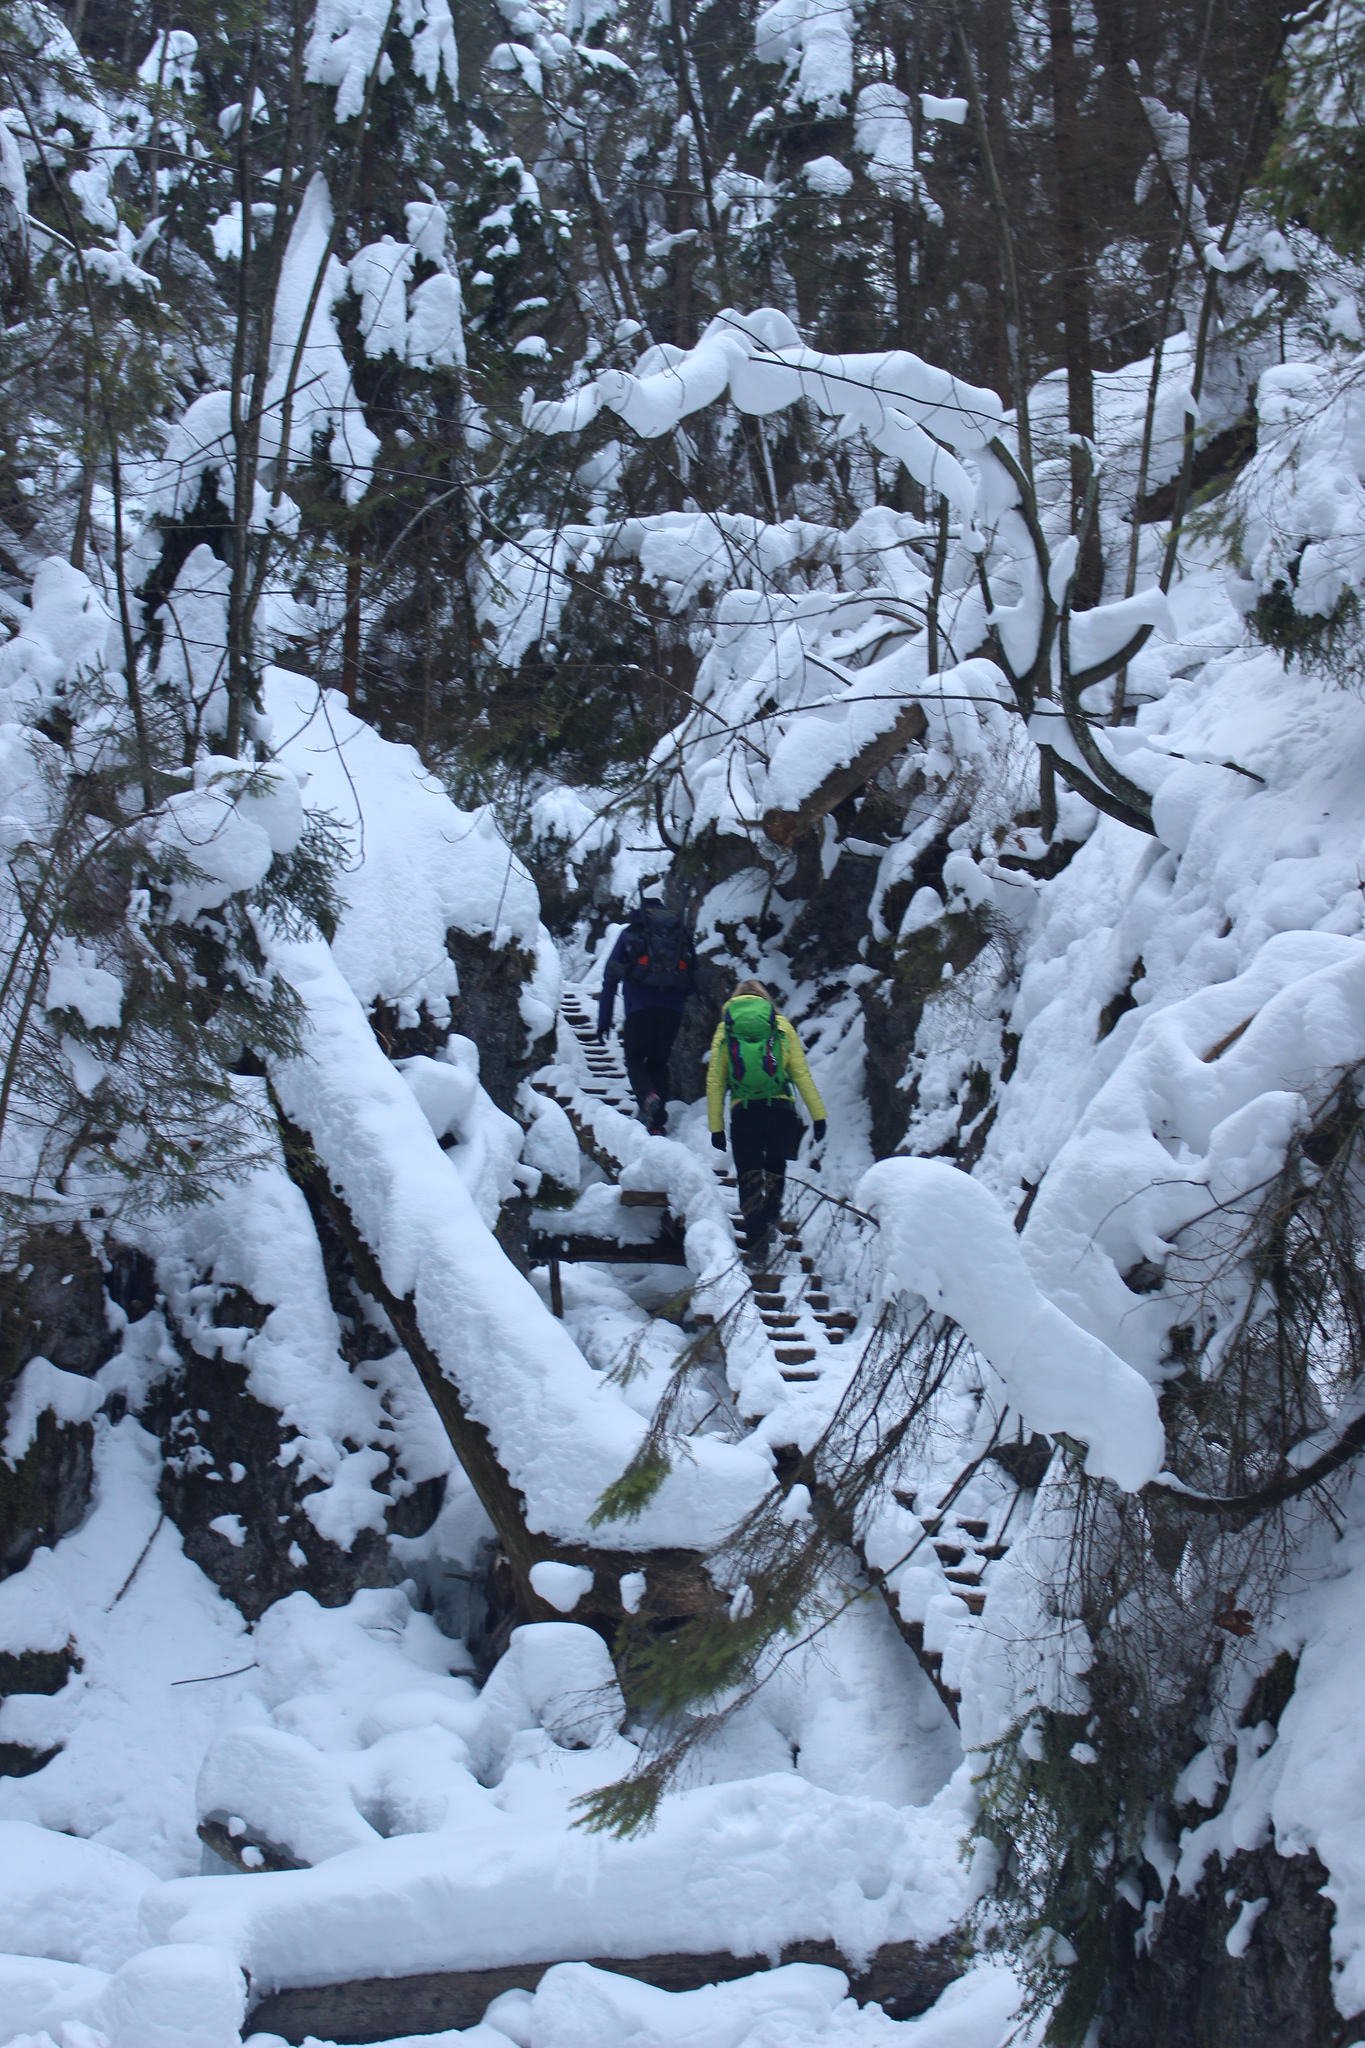 Suchá Belá gorge, winter hiking trip, Košice region, Slovakia – 21